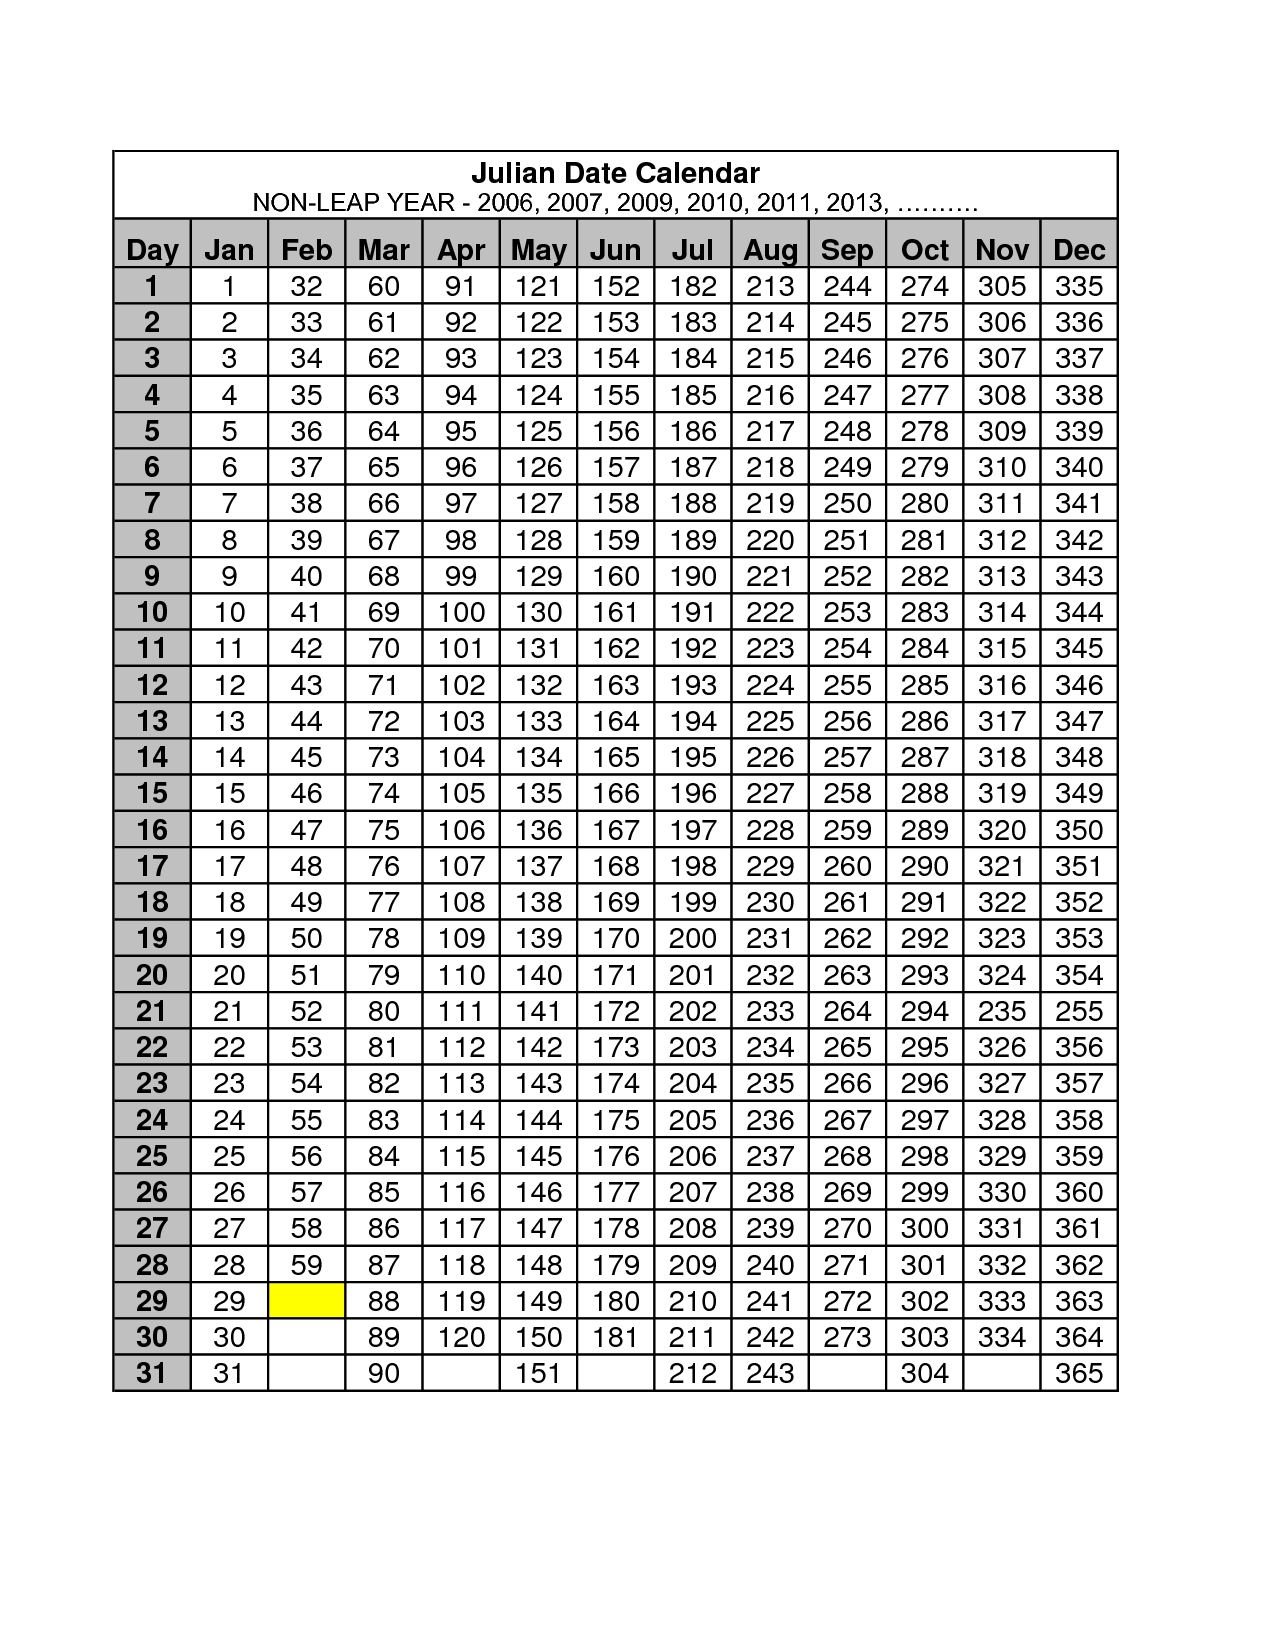 2013 Julian Date Calendar Quadax | Calendar Blank For May 2015 with regard to Quadax Julian Calendar